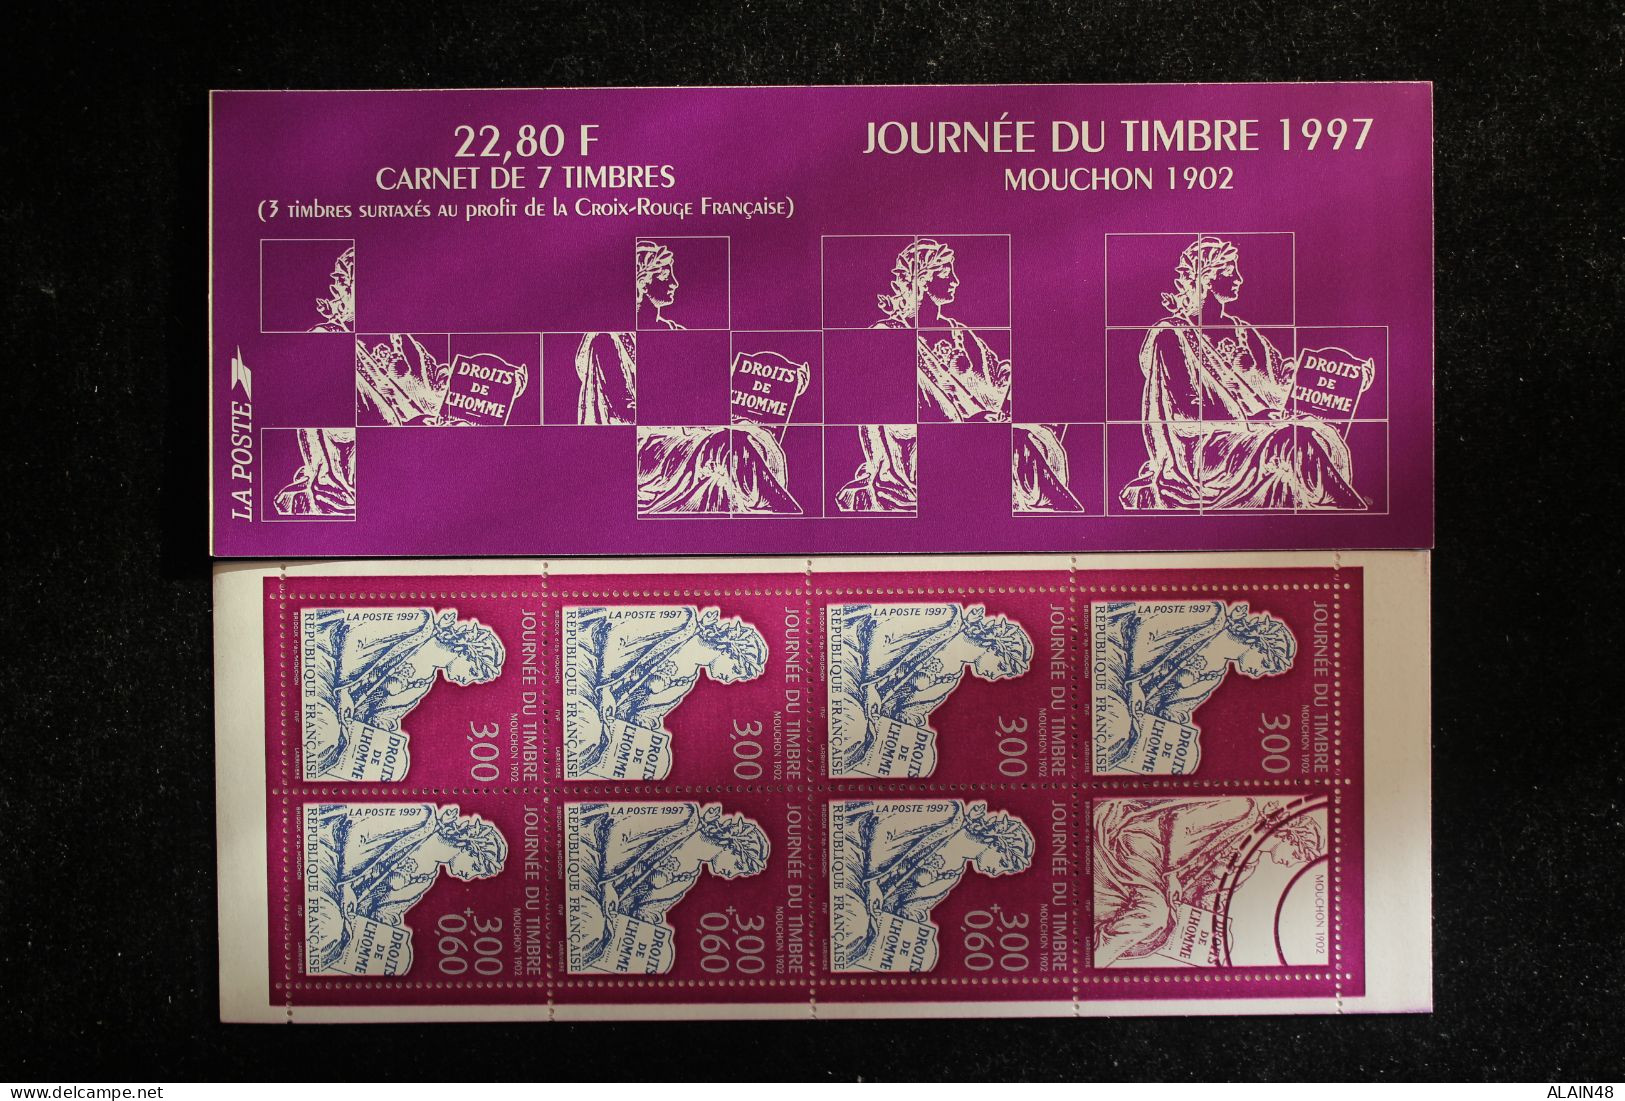 FRANCE 1997 CARNET BC3053 JOURNEE DU TIMBRE NEUFS** NON PLIE TTB MOUCHON 1902 - Tag Der Briefmarke